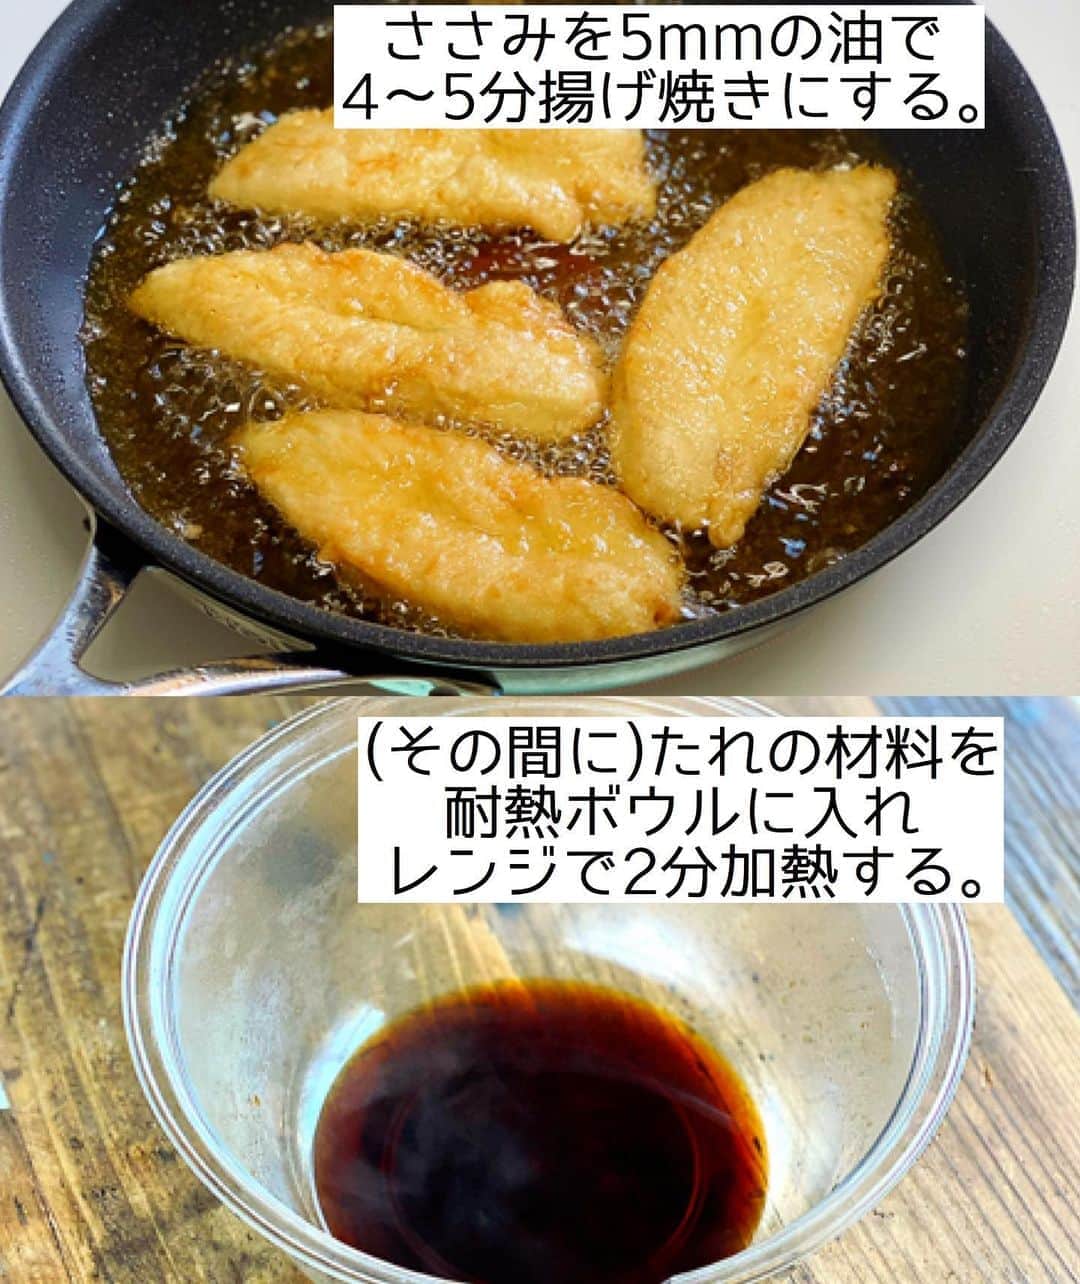 Mizuki【料理ブロガー・簡単レシピ】さんのインスタグラム写真 - (Mizuki【料理ブロガー・簡単レシピ】Instagram)「・﻿ 【レシピ】ーーーーーーーーーーーー﻿ ♡給食で人気♡ささみのレモン煮♡﻿ ーーーーーーーーーーーーーーーーー﻿ ﻿ ﻿ ﻿ おはようございます(*^^*)﻿ ﻿ 今日ご紹介させていただくのは﻿ ささみのレモン煮♡﻿ カラっと揚げ焼きにしたささみに﻿ レモン風味の甘辛だれをからめた﻿ 人気の給食メニューです(*´艸`)﻿ (煮ないけどレモン煮🍋)﻿ ﻿ 少ない油でできる上に﻿ たれはレンチンするだけ！﻿ とっても簡単にできるので﻿ お気軽にお試し下さいね(*^^*)﻿ ﻿ ﻿ ﻿ ーーーーーーーーーーーーーーーーーーーー﻿ 【2〜3人分】﻿ ささみ...4〜5本﻿ 酒...小1﻿ 片栗粉...適量﻿ サラダ油...適量﻿ ●砂糖・醤油...各大1.5﻿ ●水・みりん...各大1﻿ ●レモン汁...小1﻿ ﻿ 1.ささみは真ん中に切り込みを入れ、酒を揉み込み片栗粉をまぶす。﻿ 2.フライパンに5mmのサラダ油を中火で熱し、1を入れて返しながら4〜5分揚げ焼きにする。その間に耐熱ボウルに●を入れ、600Wのレンジで2分加熱する(たれ)。﻿ 3.ささみに火が通ったら油を切り、たれのボウルに入れてからめる。﻿ ーーーーーーーーーーーーーーーーーーーー﻿ ﻿ ﻿ ﻿ 《ポイント》﻿ ♦︎ささみの筋が気になる方は切り込みを入れた時に除いて下さい♩﻿ ♦︎たれはよくからめるとテリテリに仕上がります♩小さなお子さんや薄味がお好みの方はさっとからめる程度でOK！(←より給食っぽい！)﻿ ﻿ ﻿ ﻿ ﻿ ﻿ ﻿ ﻿ ＿＿＿＿＿＿＿＿＿＿＿＿＿＿＿＿＿＿＿﻿ 📕7刷重版しました📕﻿ 簡単・時短！ 毎日のごはんがラクになる﻿ ✨🦋 【 #Mizukiの今どき和食 】🦋✨﻿ ＿＿＿＿＿＿＿＿＿＿＿＿＿＿＿＿＿＿＿﻿ なるべく少ない材料で﻿ 手間も時間も省きながら﻿ 簡単にできるおいしい和食レシピ♩﻿ 簡単に失敗なくマスターできる一冊で﻿ もっと気軽に、カジュアルに﻿ 和食を楽しんで下さいね(*^^*)﻿ ＿＿＿＿＿＿＿＿＿＿＿＿＿＿＿＿＿＿＿﻿ ﻿ ﻿ ﻿ ＿＿＿＿＿＿＿＿＿＿＿＿＿＿＿＿＿＿＿﻿ 🎀6刷重版しました🎀﻿ 混ぜて焼くだけ。はじめてでも失敗しない！﻿ 【#ホットケーキミックスのお菓子 】﻿ ﻿ 一冊まるっとホケミスイーツ♩﻿ 普段のおやつから﻿ 特別な日にも使えるレシピを﻿ この一冊に詰め込みました(*^^*)﻿ ホットケーキミックスを使えば﻿ 簡単に本格的なお菓子が作れますよ♡﻿ ＿＿＿＿＿＿＿＿＿＿＿＿＿＿＿＿＿﻿ ﻿ ﻿ ﻿ ﻿ ￣￣￣￣￣￣￣￣￣￣￣￣￣￣￣￣￣￣﻿ レシピを作って下さった際や﻿ レシピ本についてのご投稿には﻿ タグ付け( @mizuki_31cafe )して﻿ お知らせいただけると嬉しいです😊💕﻿ ＿＿＿＿＿＿＿＿＿＿＿＿＿＿＿＿＿＿﻿ ﻿ ﻿ ﻿ ﻿ ﻿ #ささみ#レモン煮#レモン揚げ#揚げない#給食﻿ #Mizuki#簡単レシピ#時短レシピ#節約レシピ#料理#レシピ#フーディーテーブル#マカロニメイト#おうちごはん#デリスタグラマー#料理好きな人と繋がりたい#食べ物#料理記録#おうちごはんlover#写真好きな人と繋がりたい#foodpic#cooking#recipe#lin_stagrammer#foodporn#yummy#ささみのレモン煮m」8月21日 7時01分 - mizuki_31cafe